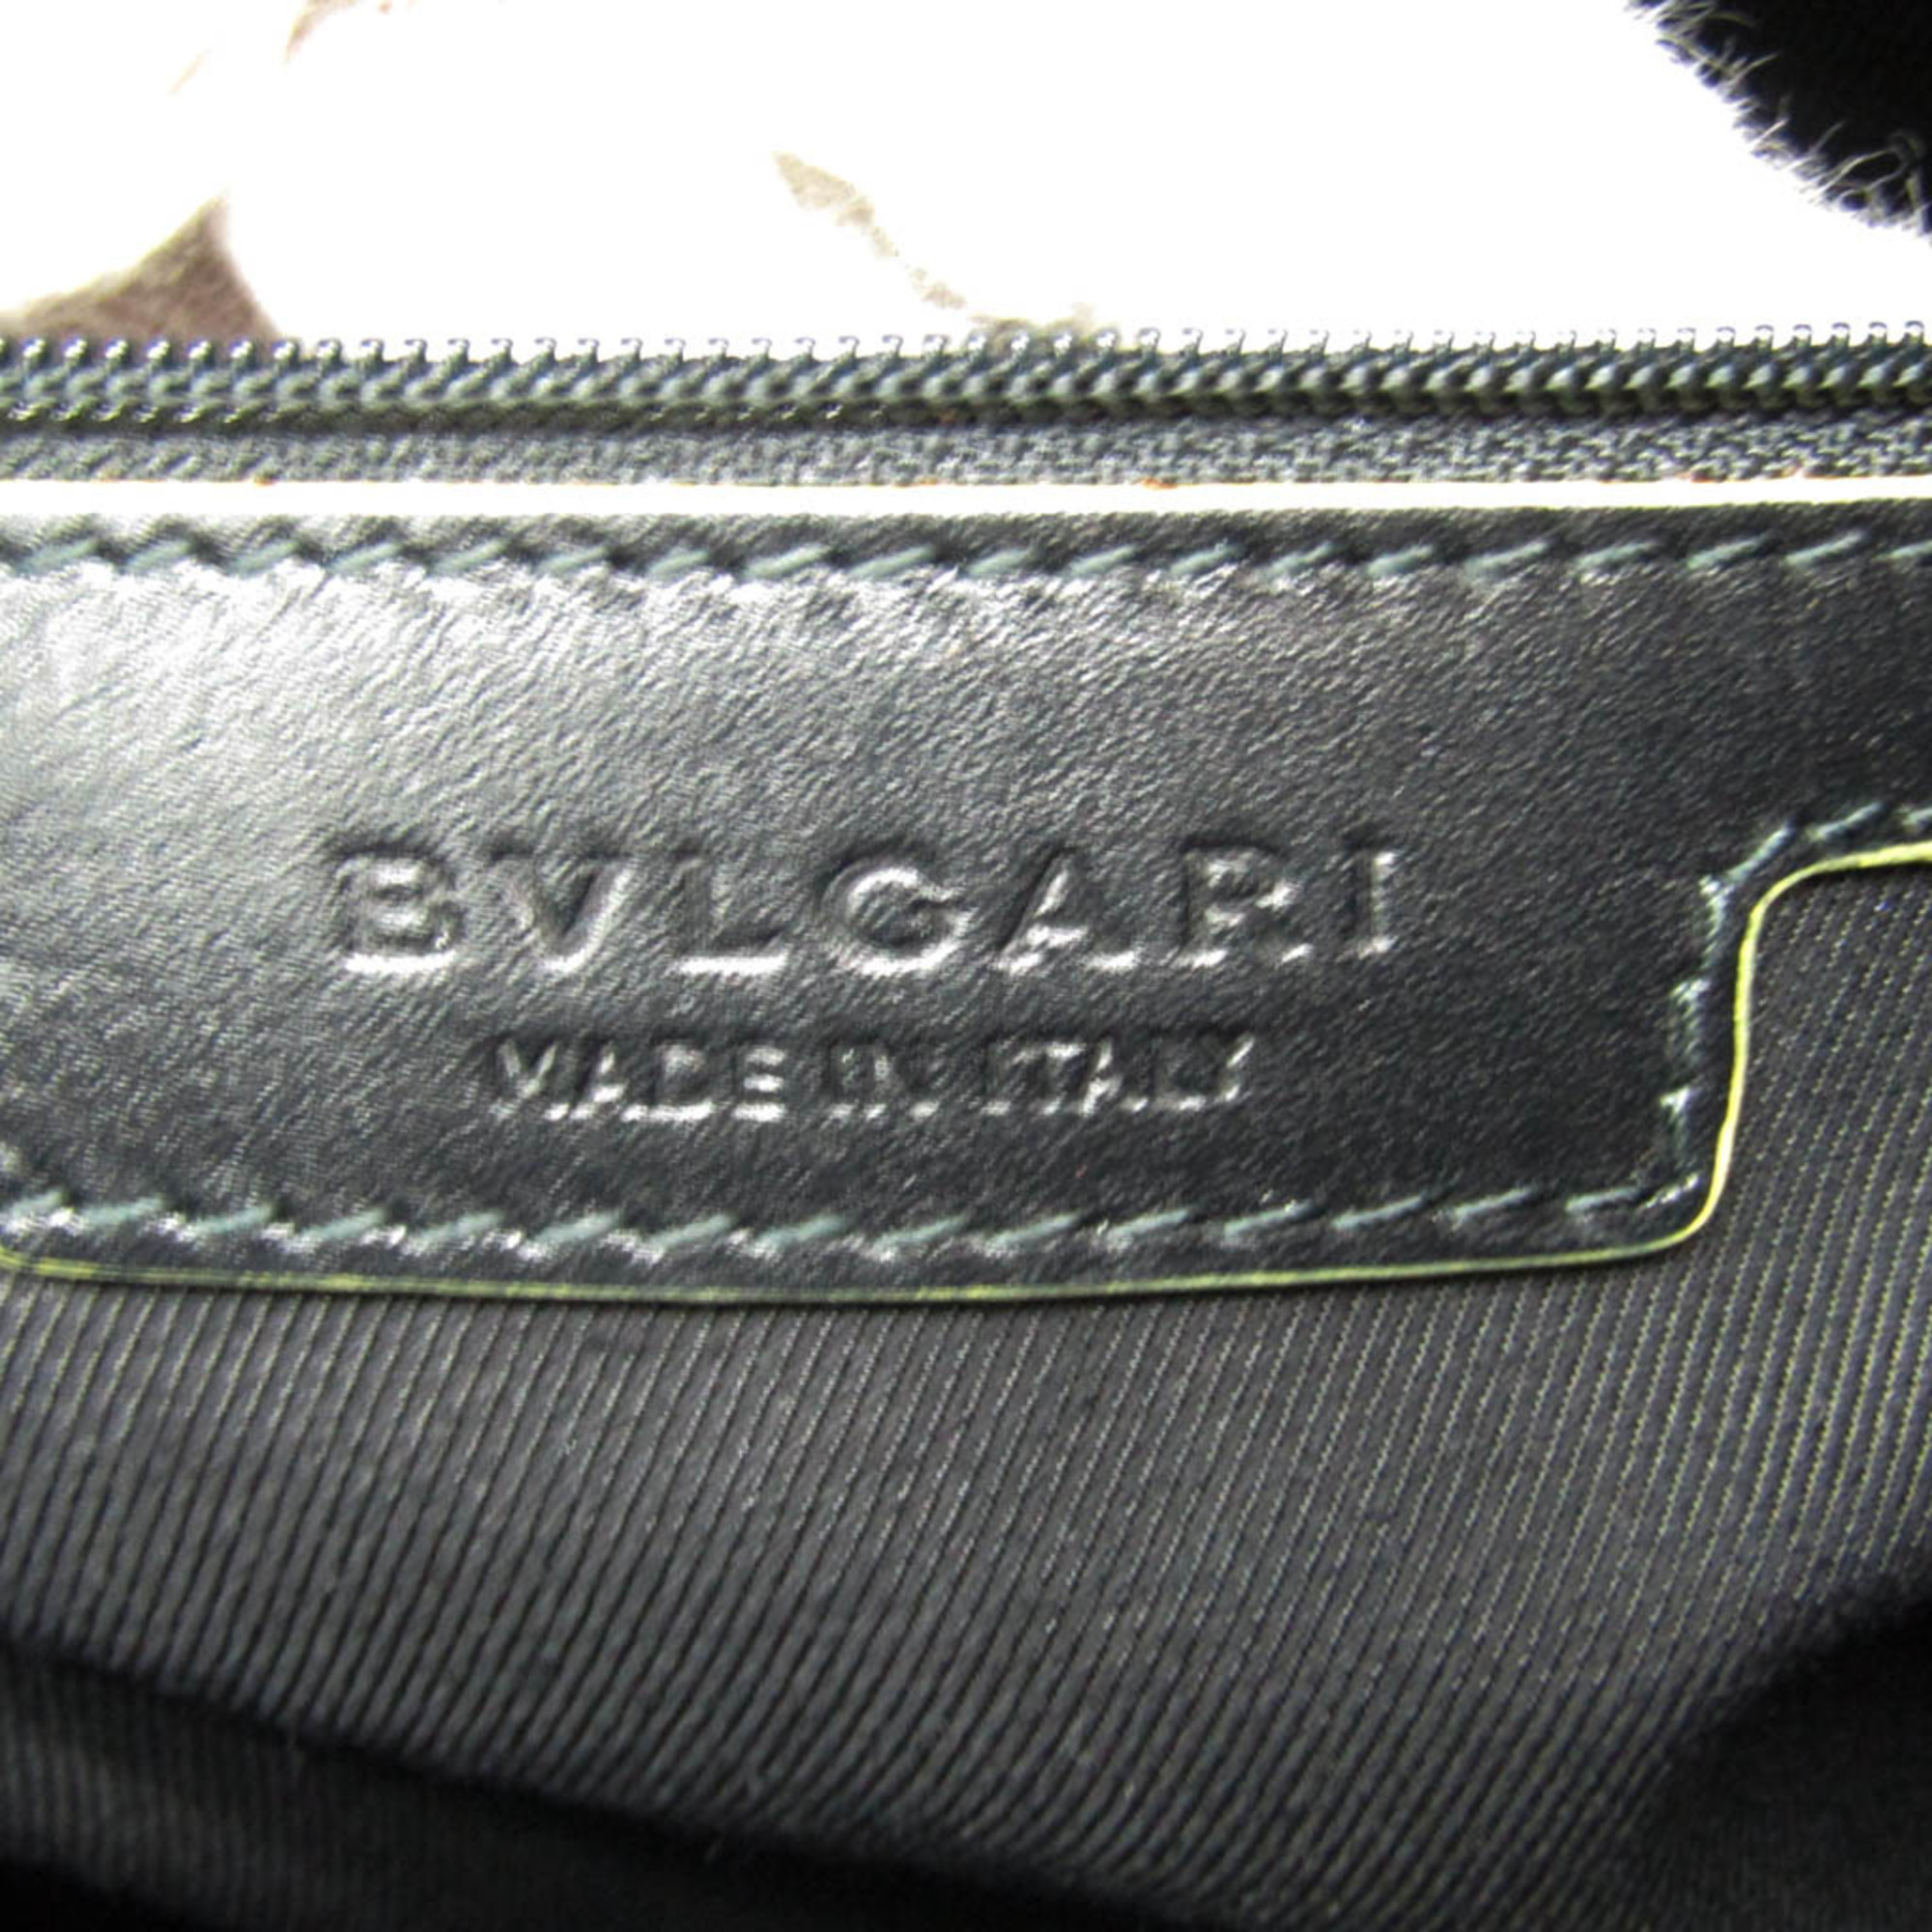 ブルガリ(Bvlgari) コレツィオーネ 32524 レディース,メンズ レザー,PVC ショルダーバッグ ブラック,イエロー